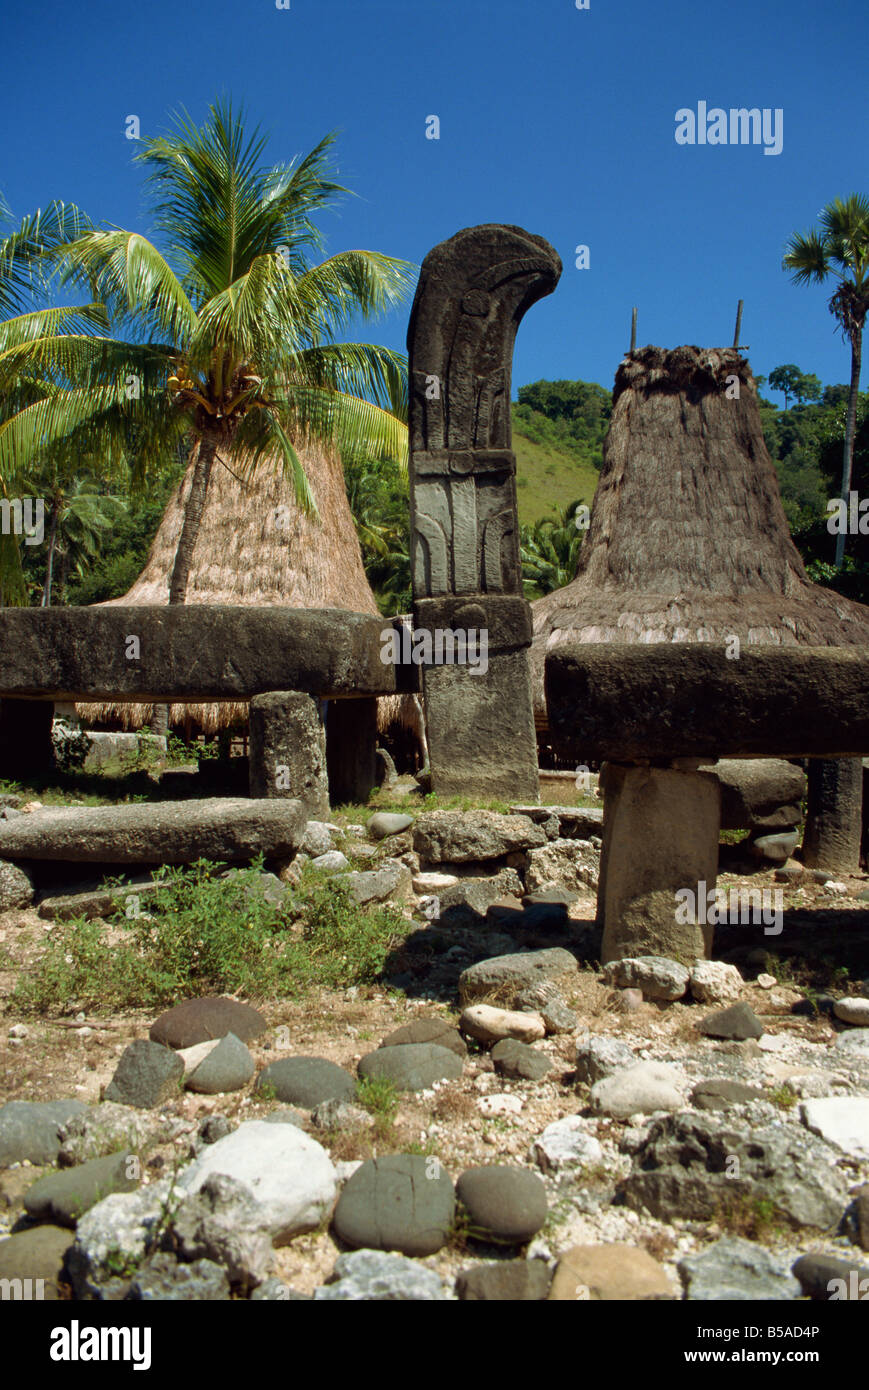 Tombe Waigali isola di Sumba Indonesia Asia del sud-est asiatico Foto Stock